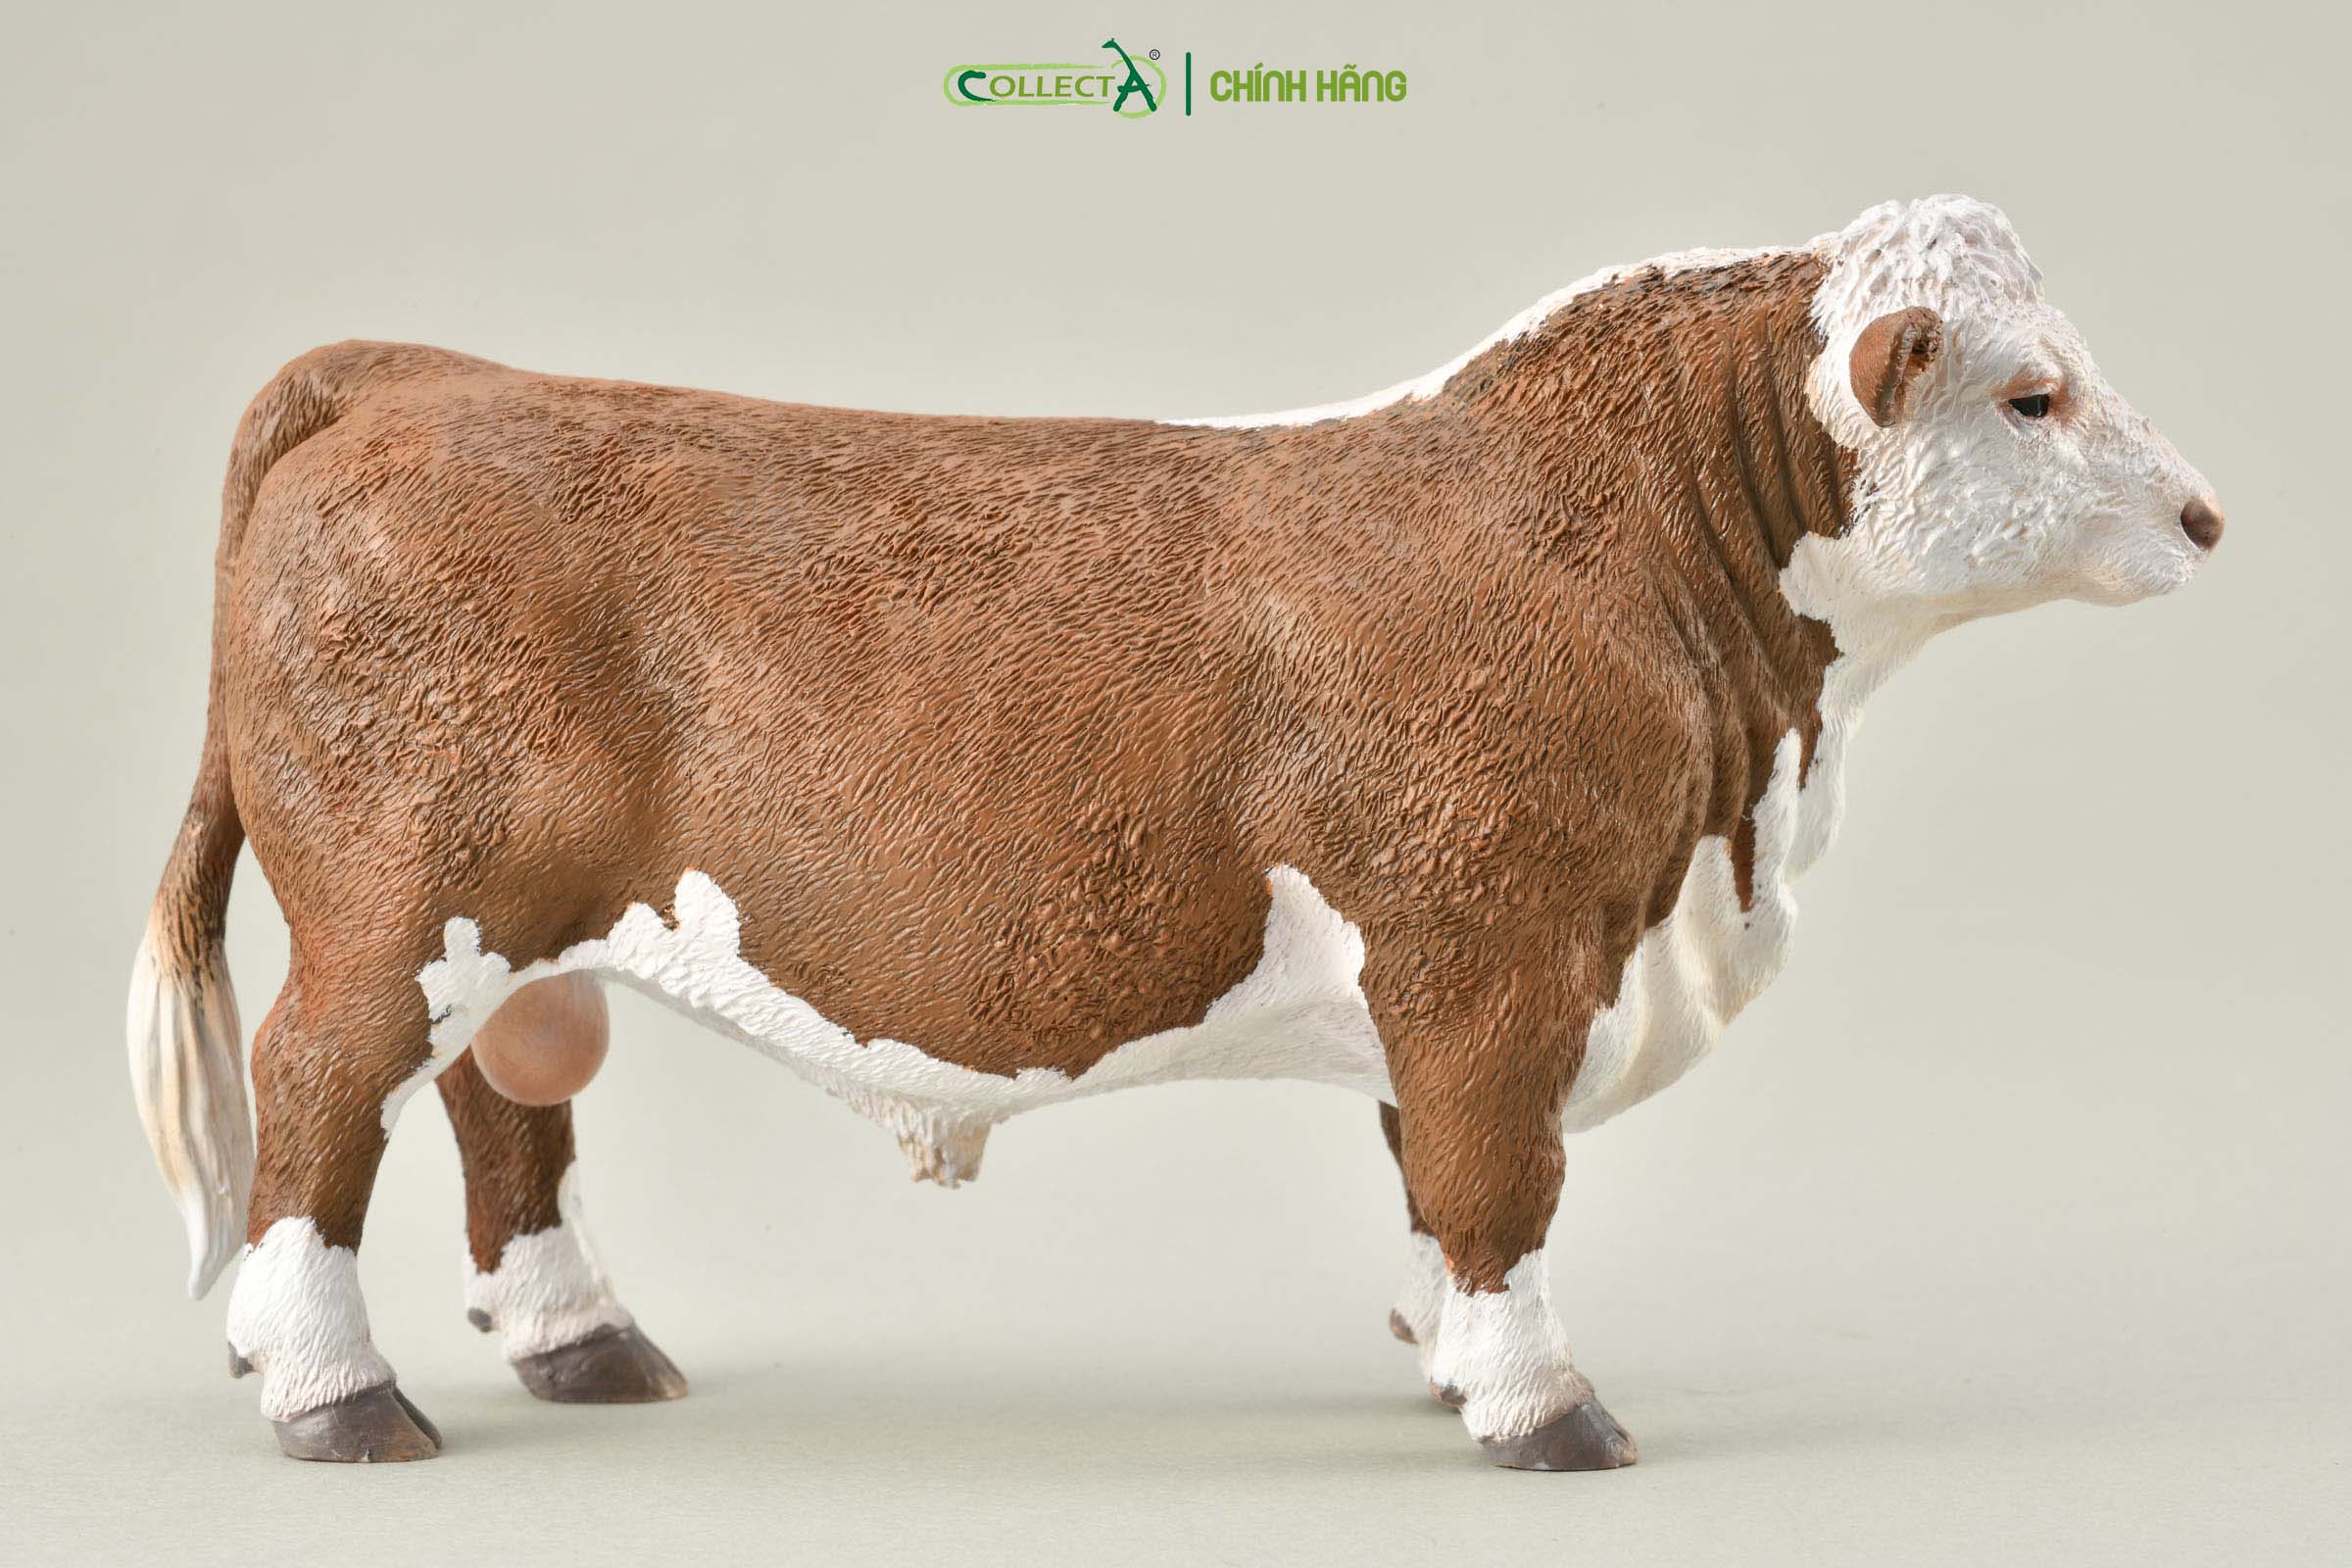 Mô hình thu nhỏ: Bò Hereford bố - Hereford Bull (Polled), hiệu: CollectA, mã HS 9650180[88861] -  Chất liệu an toàn cho trẻ - Hàng chính hãng